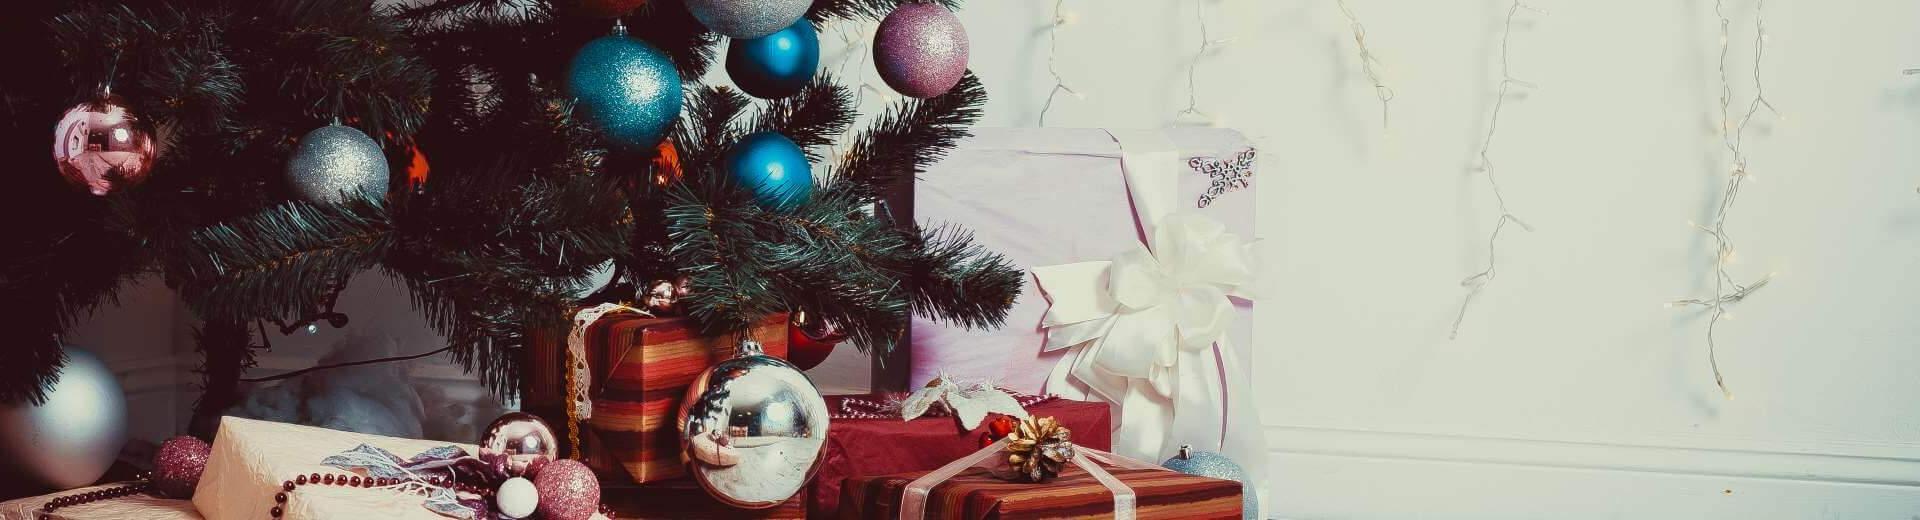 Weihnachten im Ferienhaus in Schweden | Casamundo - Casamundo